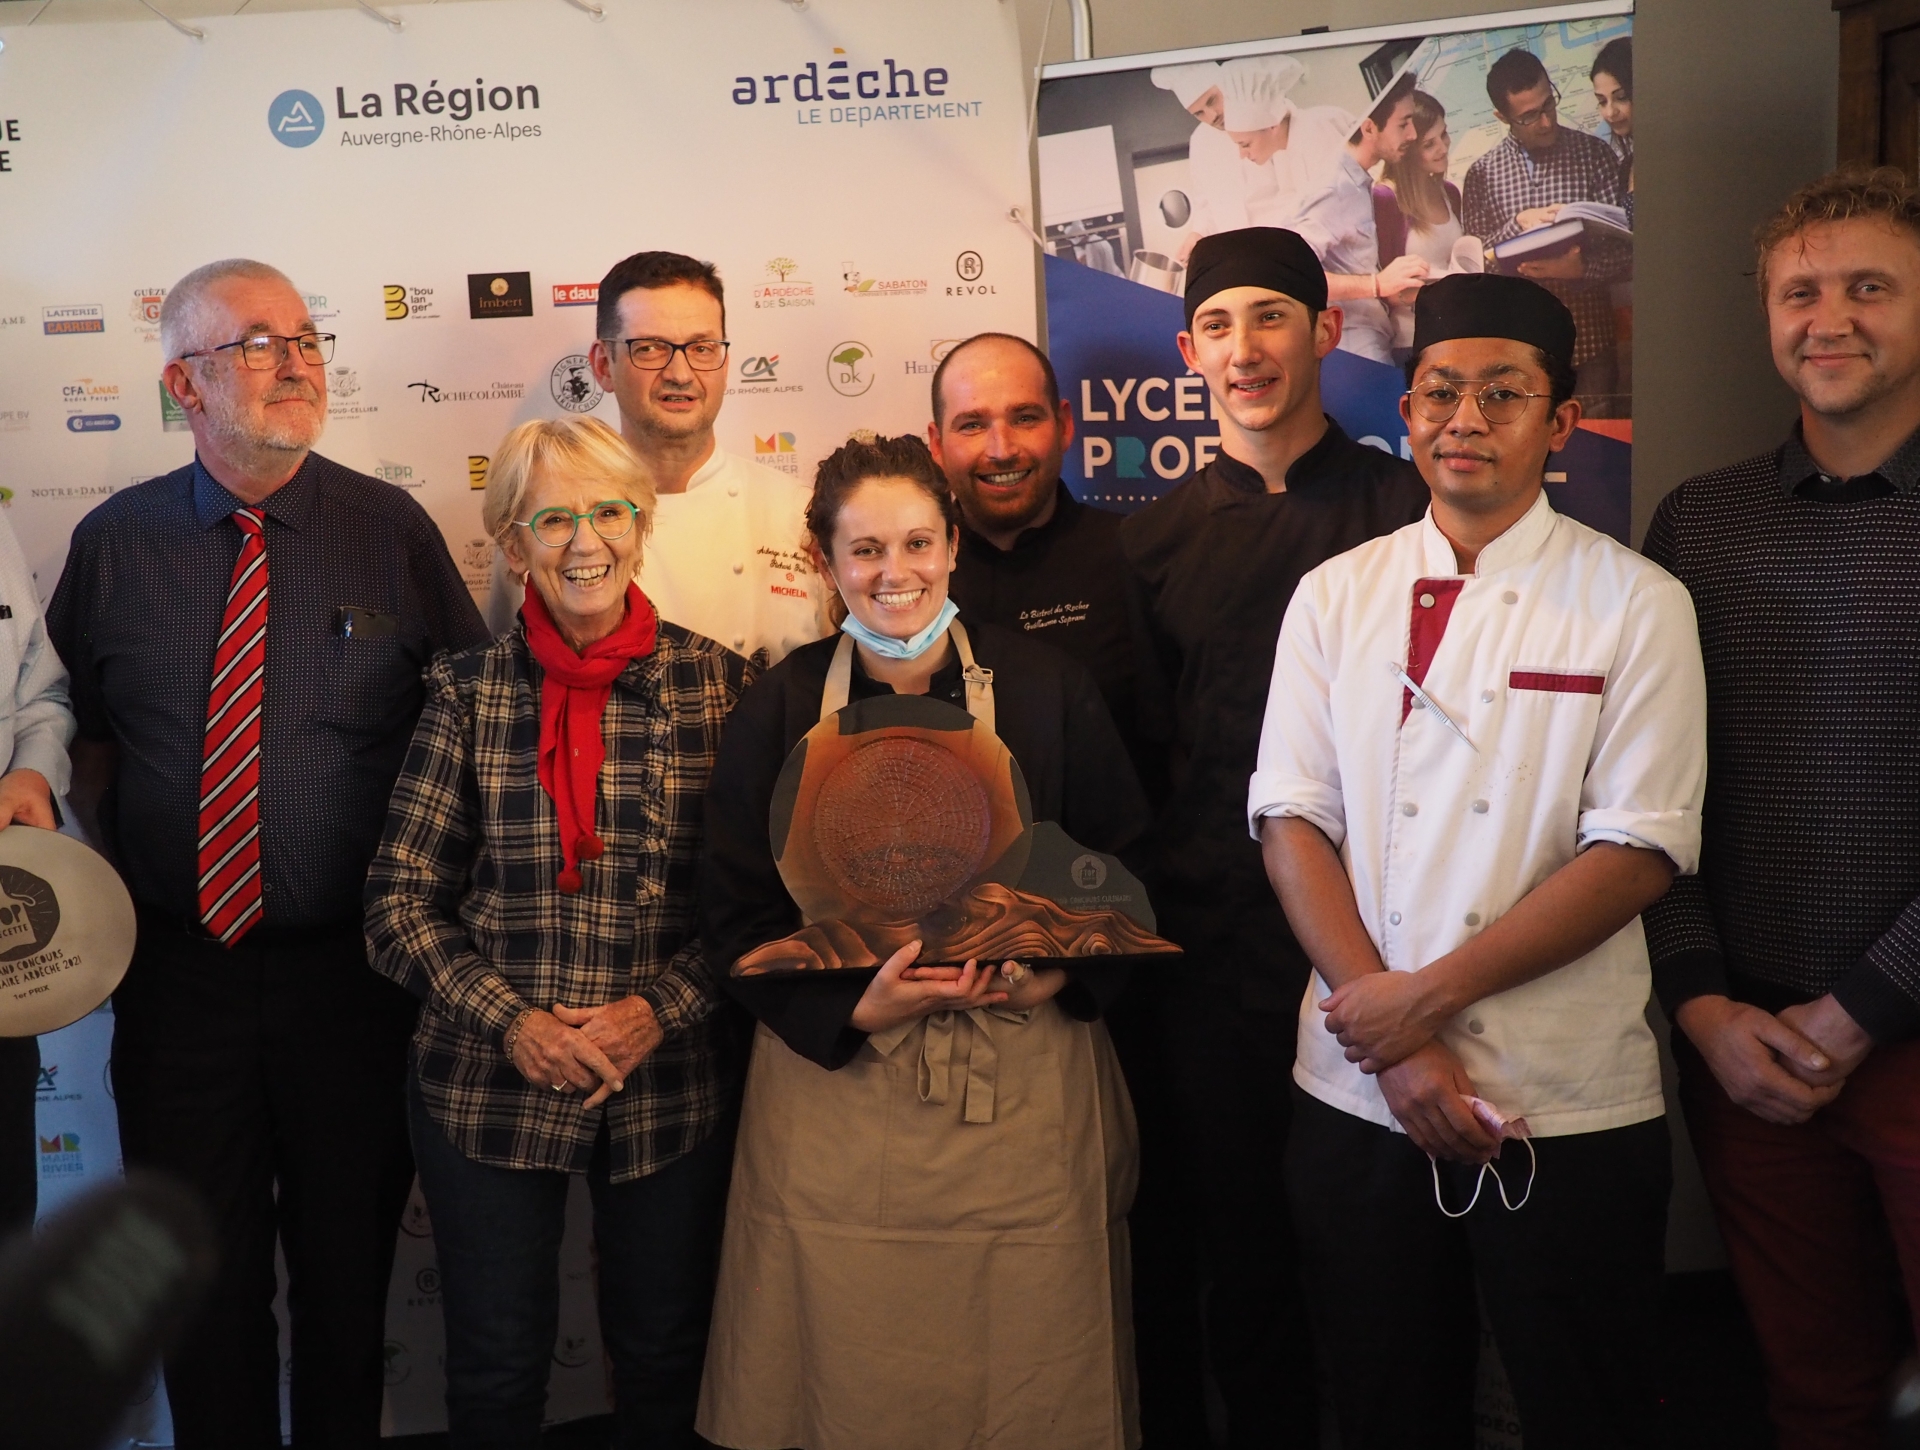 « Top Recette » : quand des cuisiniers amateurs et des chefs subliment l’Ardèche